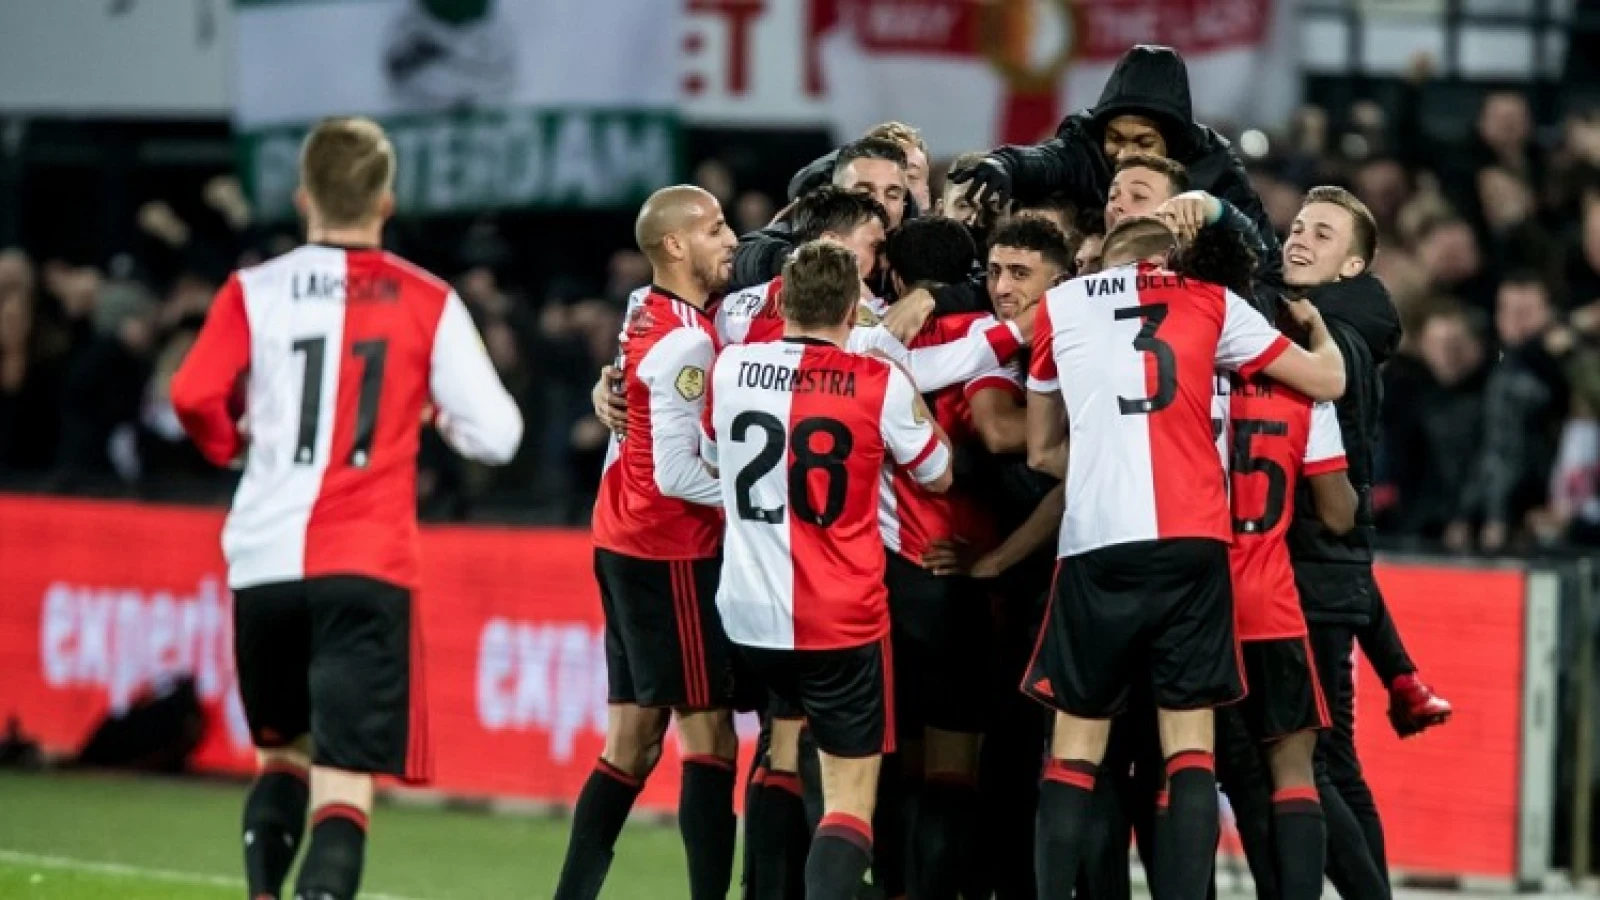 Kijkcijferrecord tijdens bekerwedstrijd Feyenoord - PSV